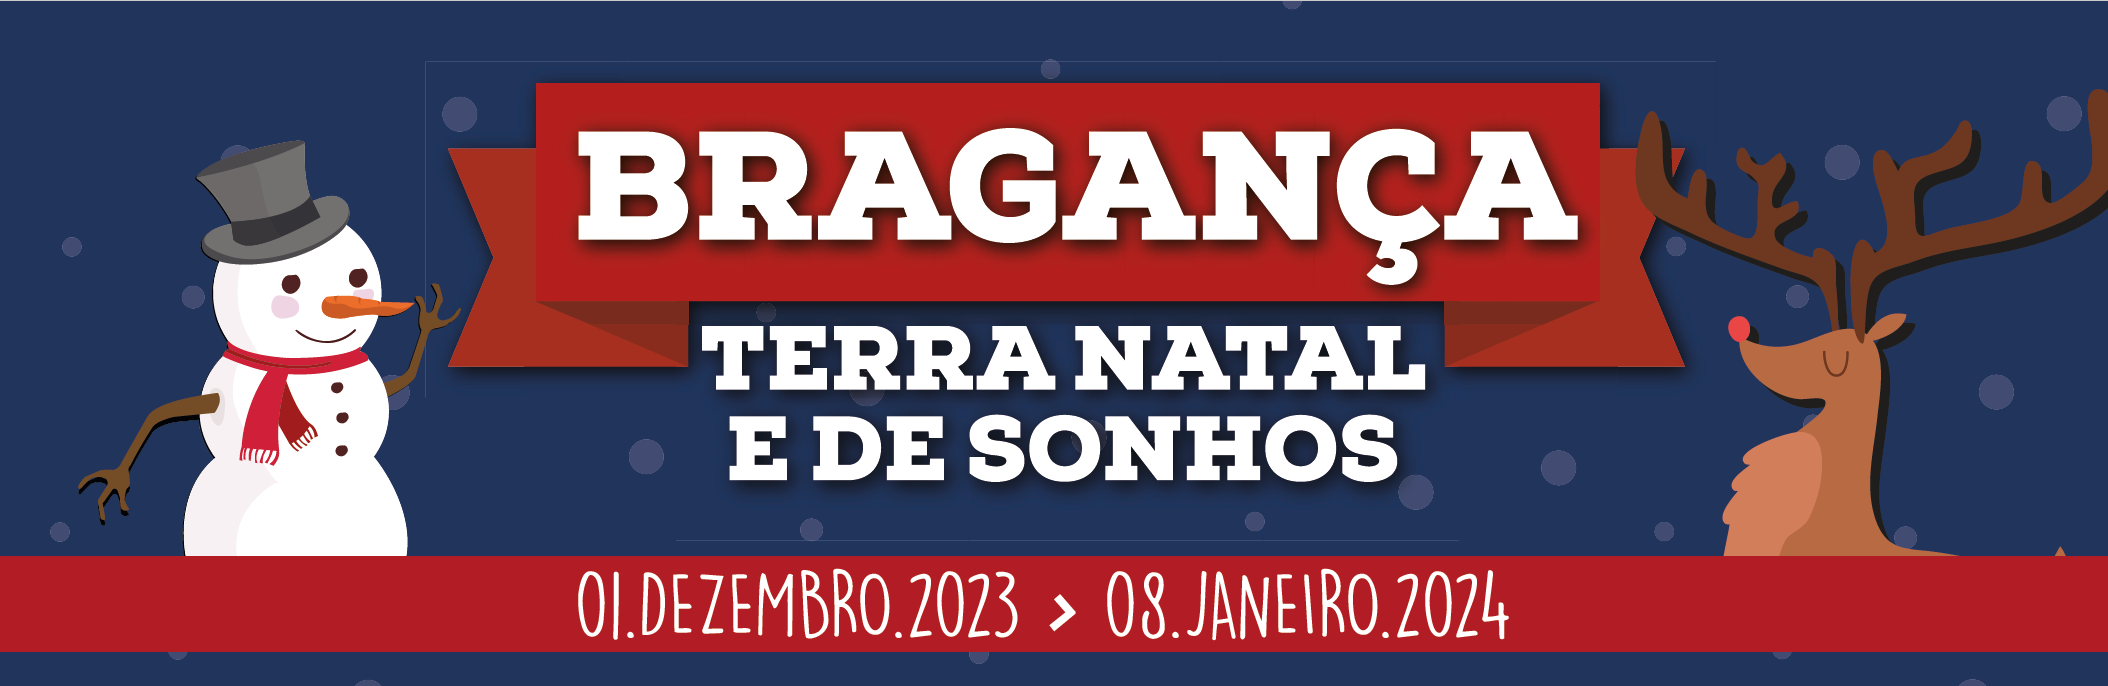 Bragança, Terra Natal e de Sonhos 2023